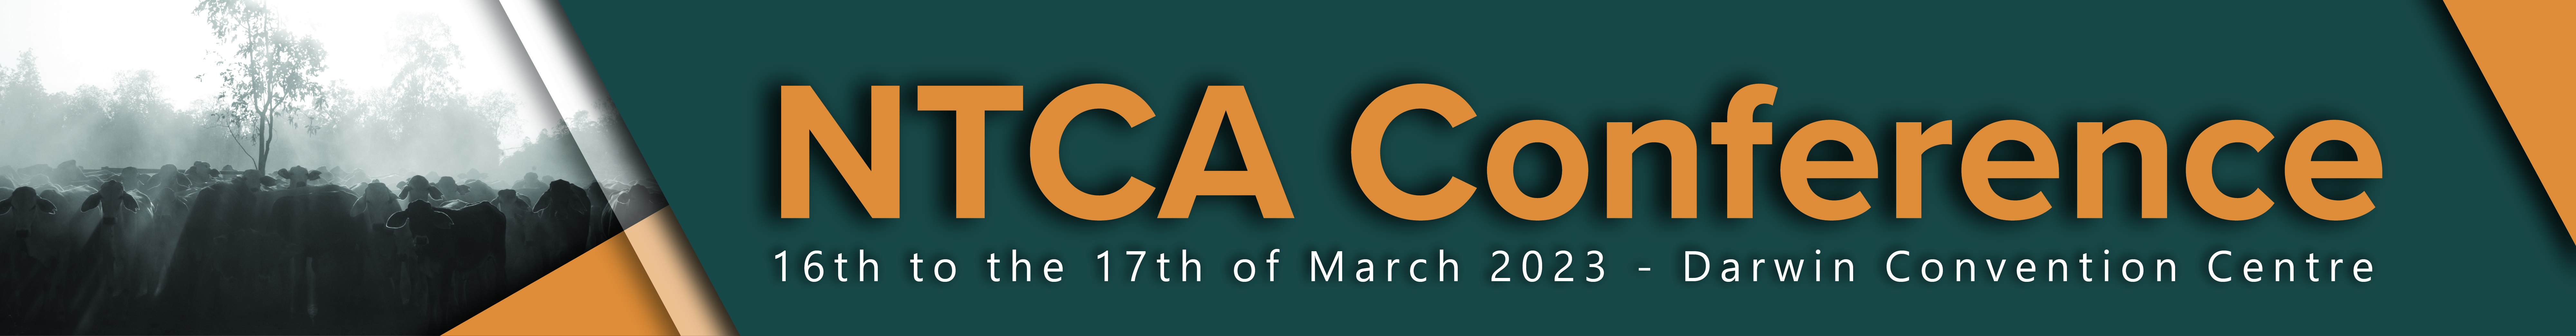 NTCA 2023 Conference Website Header